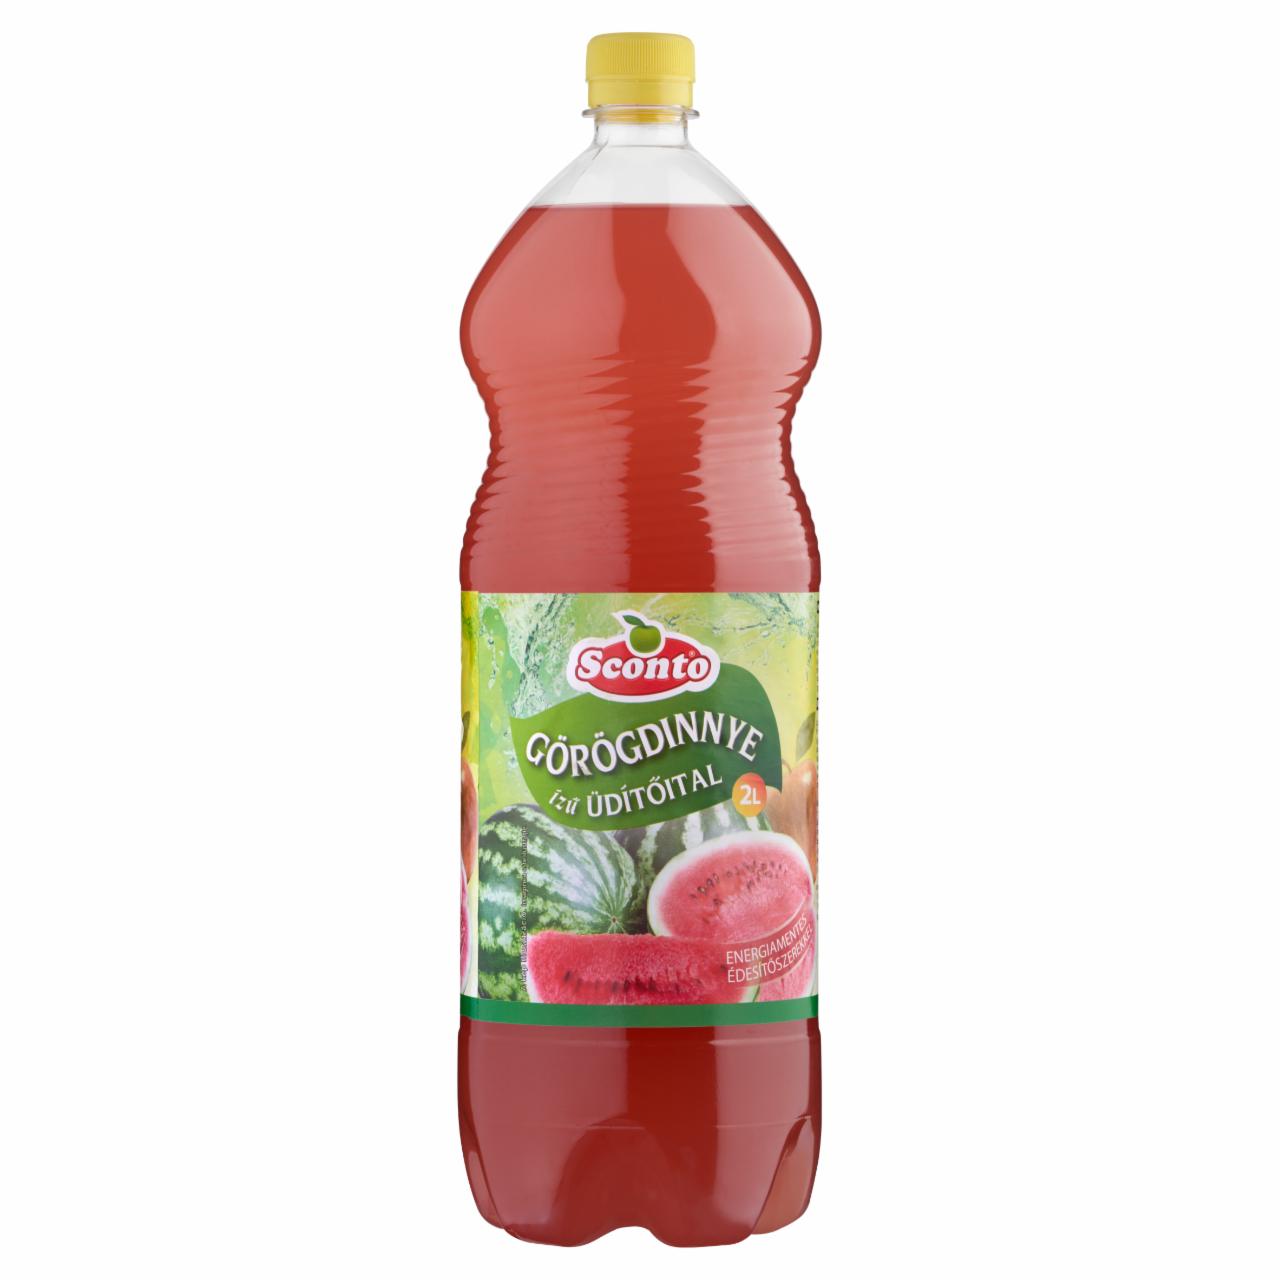 Képek - Sconto energiamentes görögdinnye ízű üdítőital édesítőszerekkel 2 l